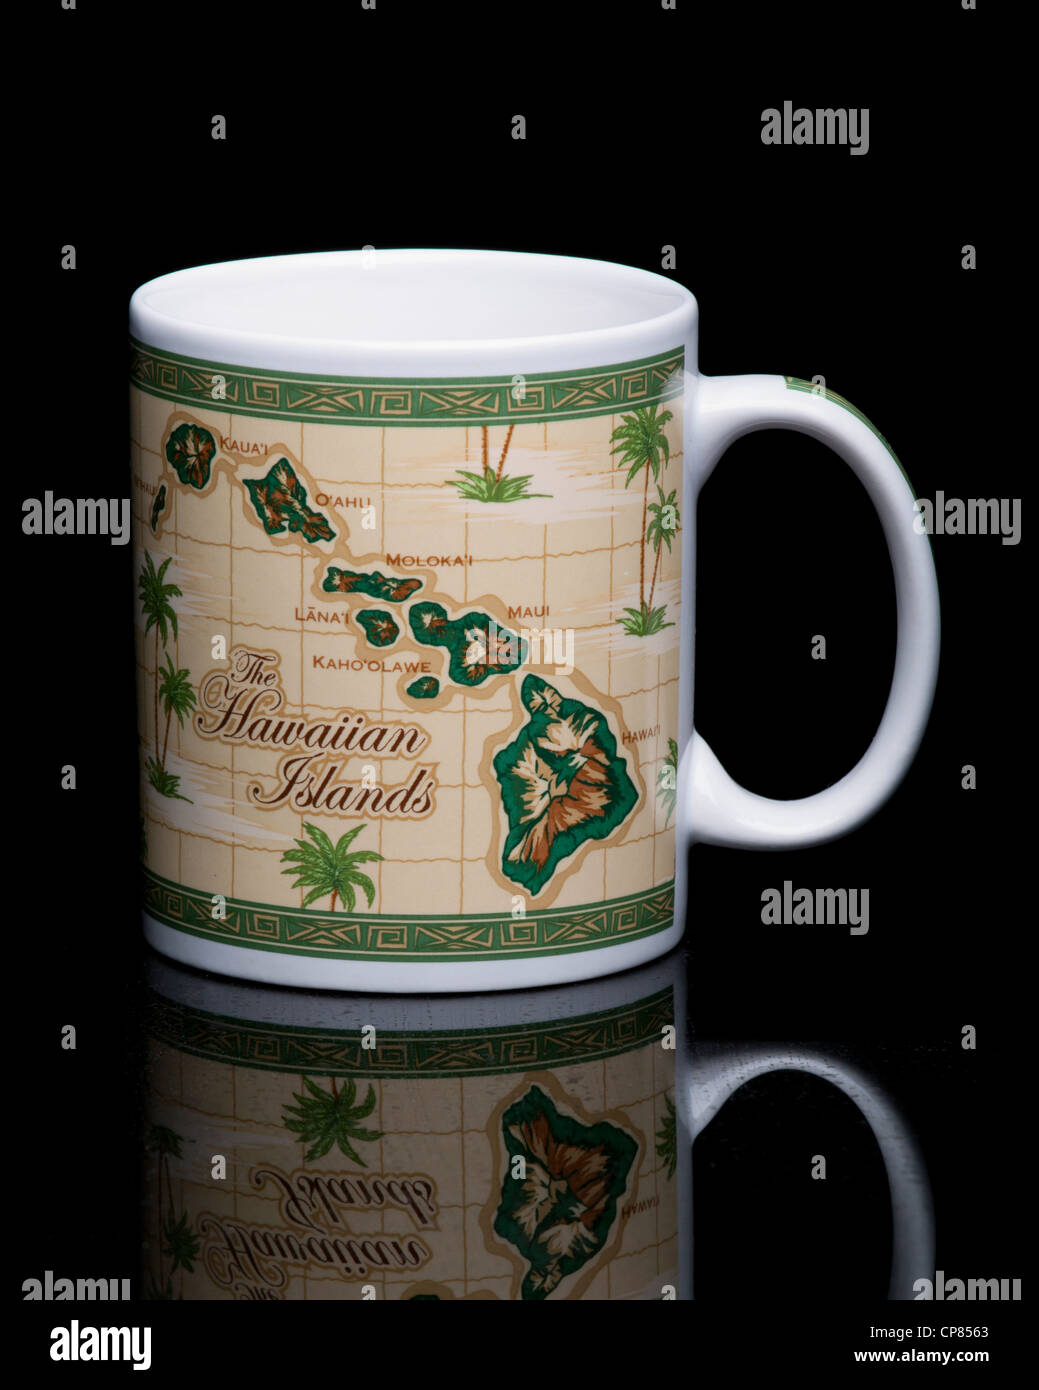 Taza de café que muestra el mapa de las Islas Hawaianas Foto de stock